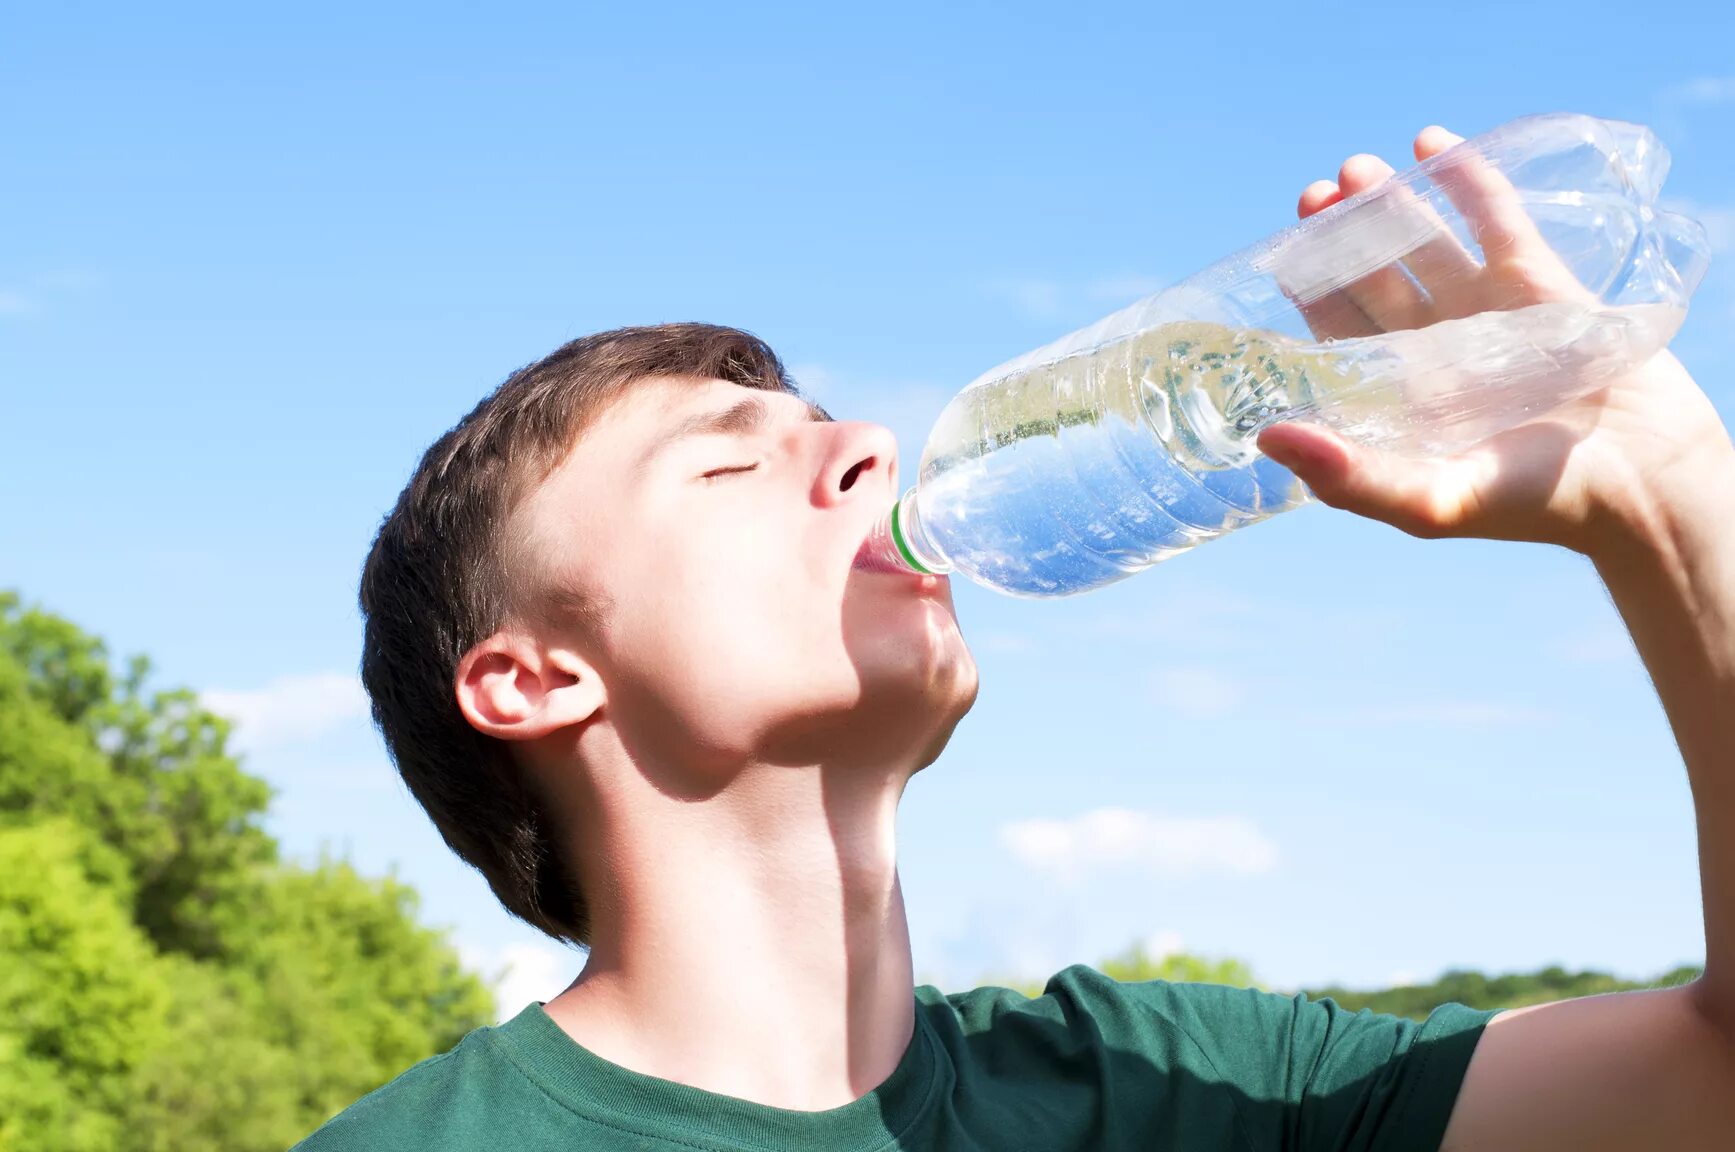 Пьет воду из бутылки. Парень с бутылкой воды. Парень пьет воду из бутылки. Пить воду.